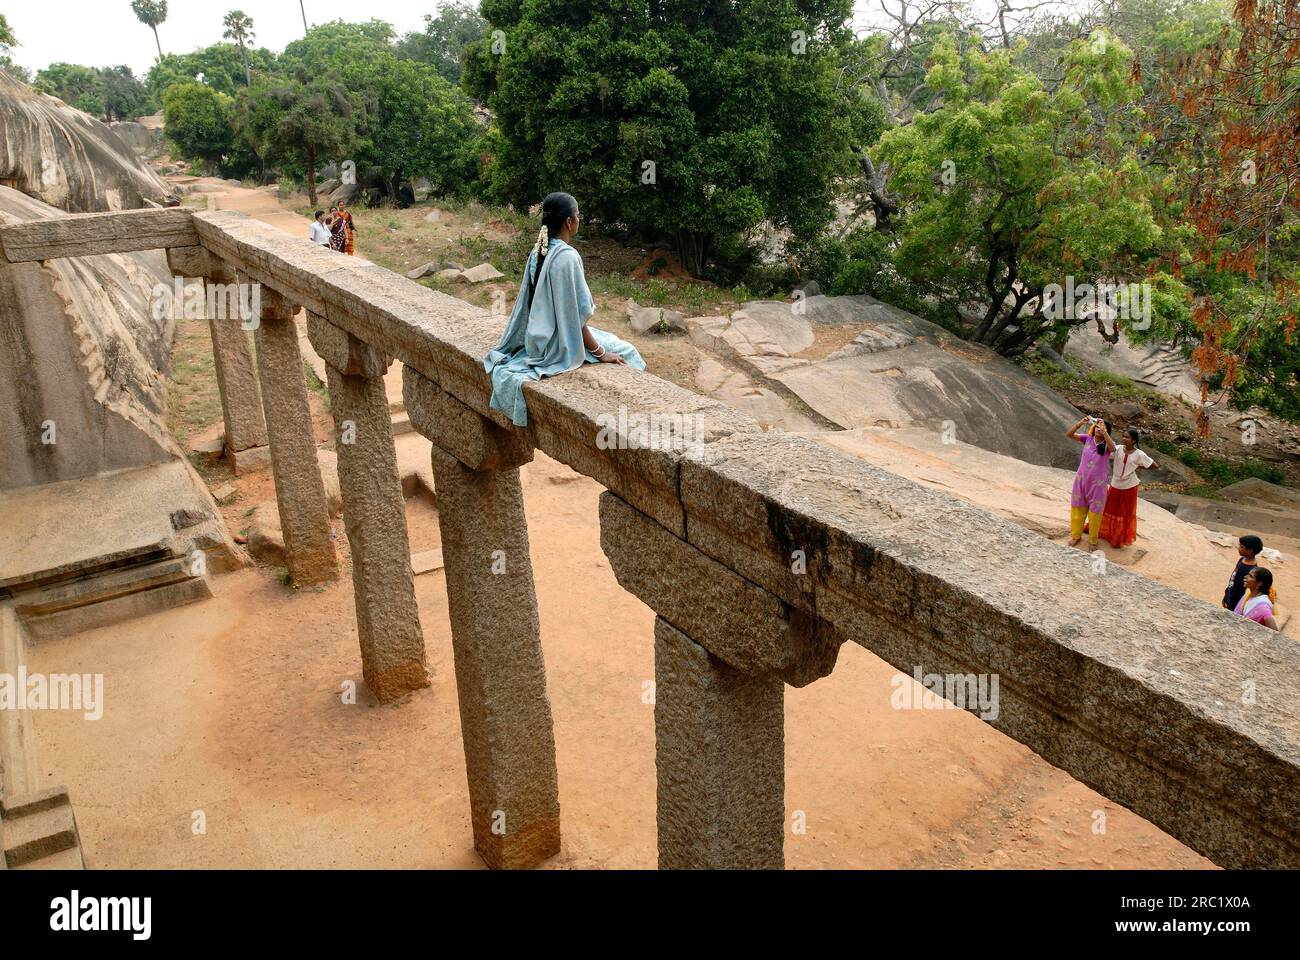 Ramanuja Mandapam à Mahabalipuram Mamallapuram près de Chennai, Tamil Nadu, Inde du Sud, Inde, Asie. Site du patrimoine mondial de l'UNESCO Banque D'Images